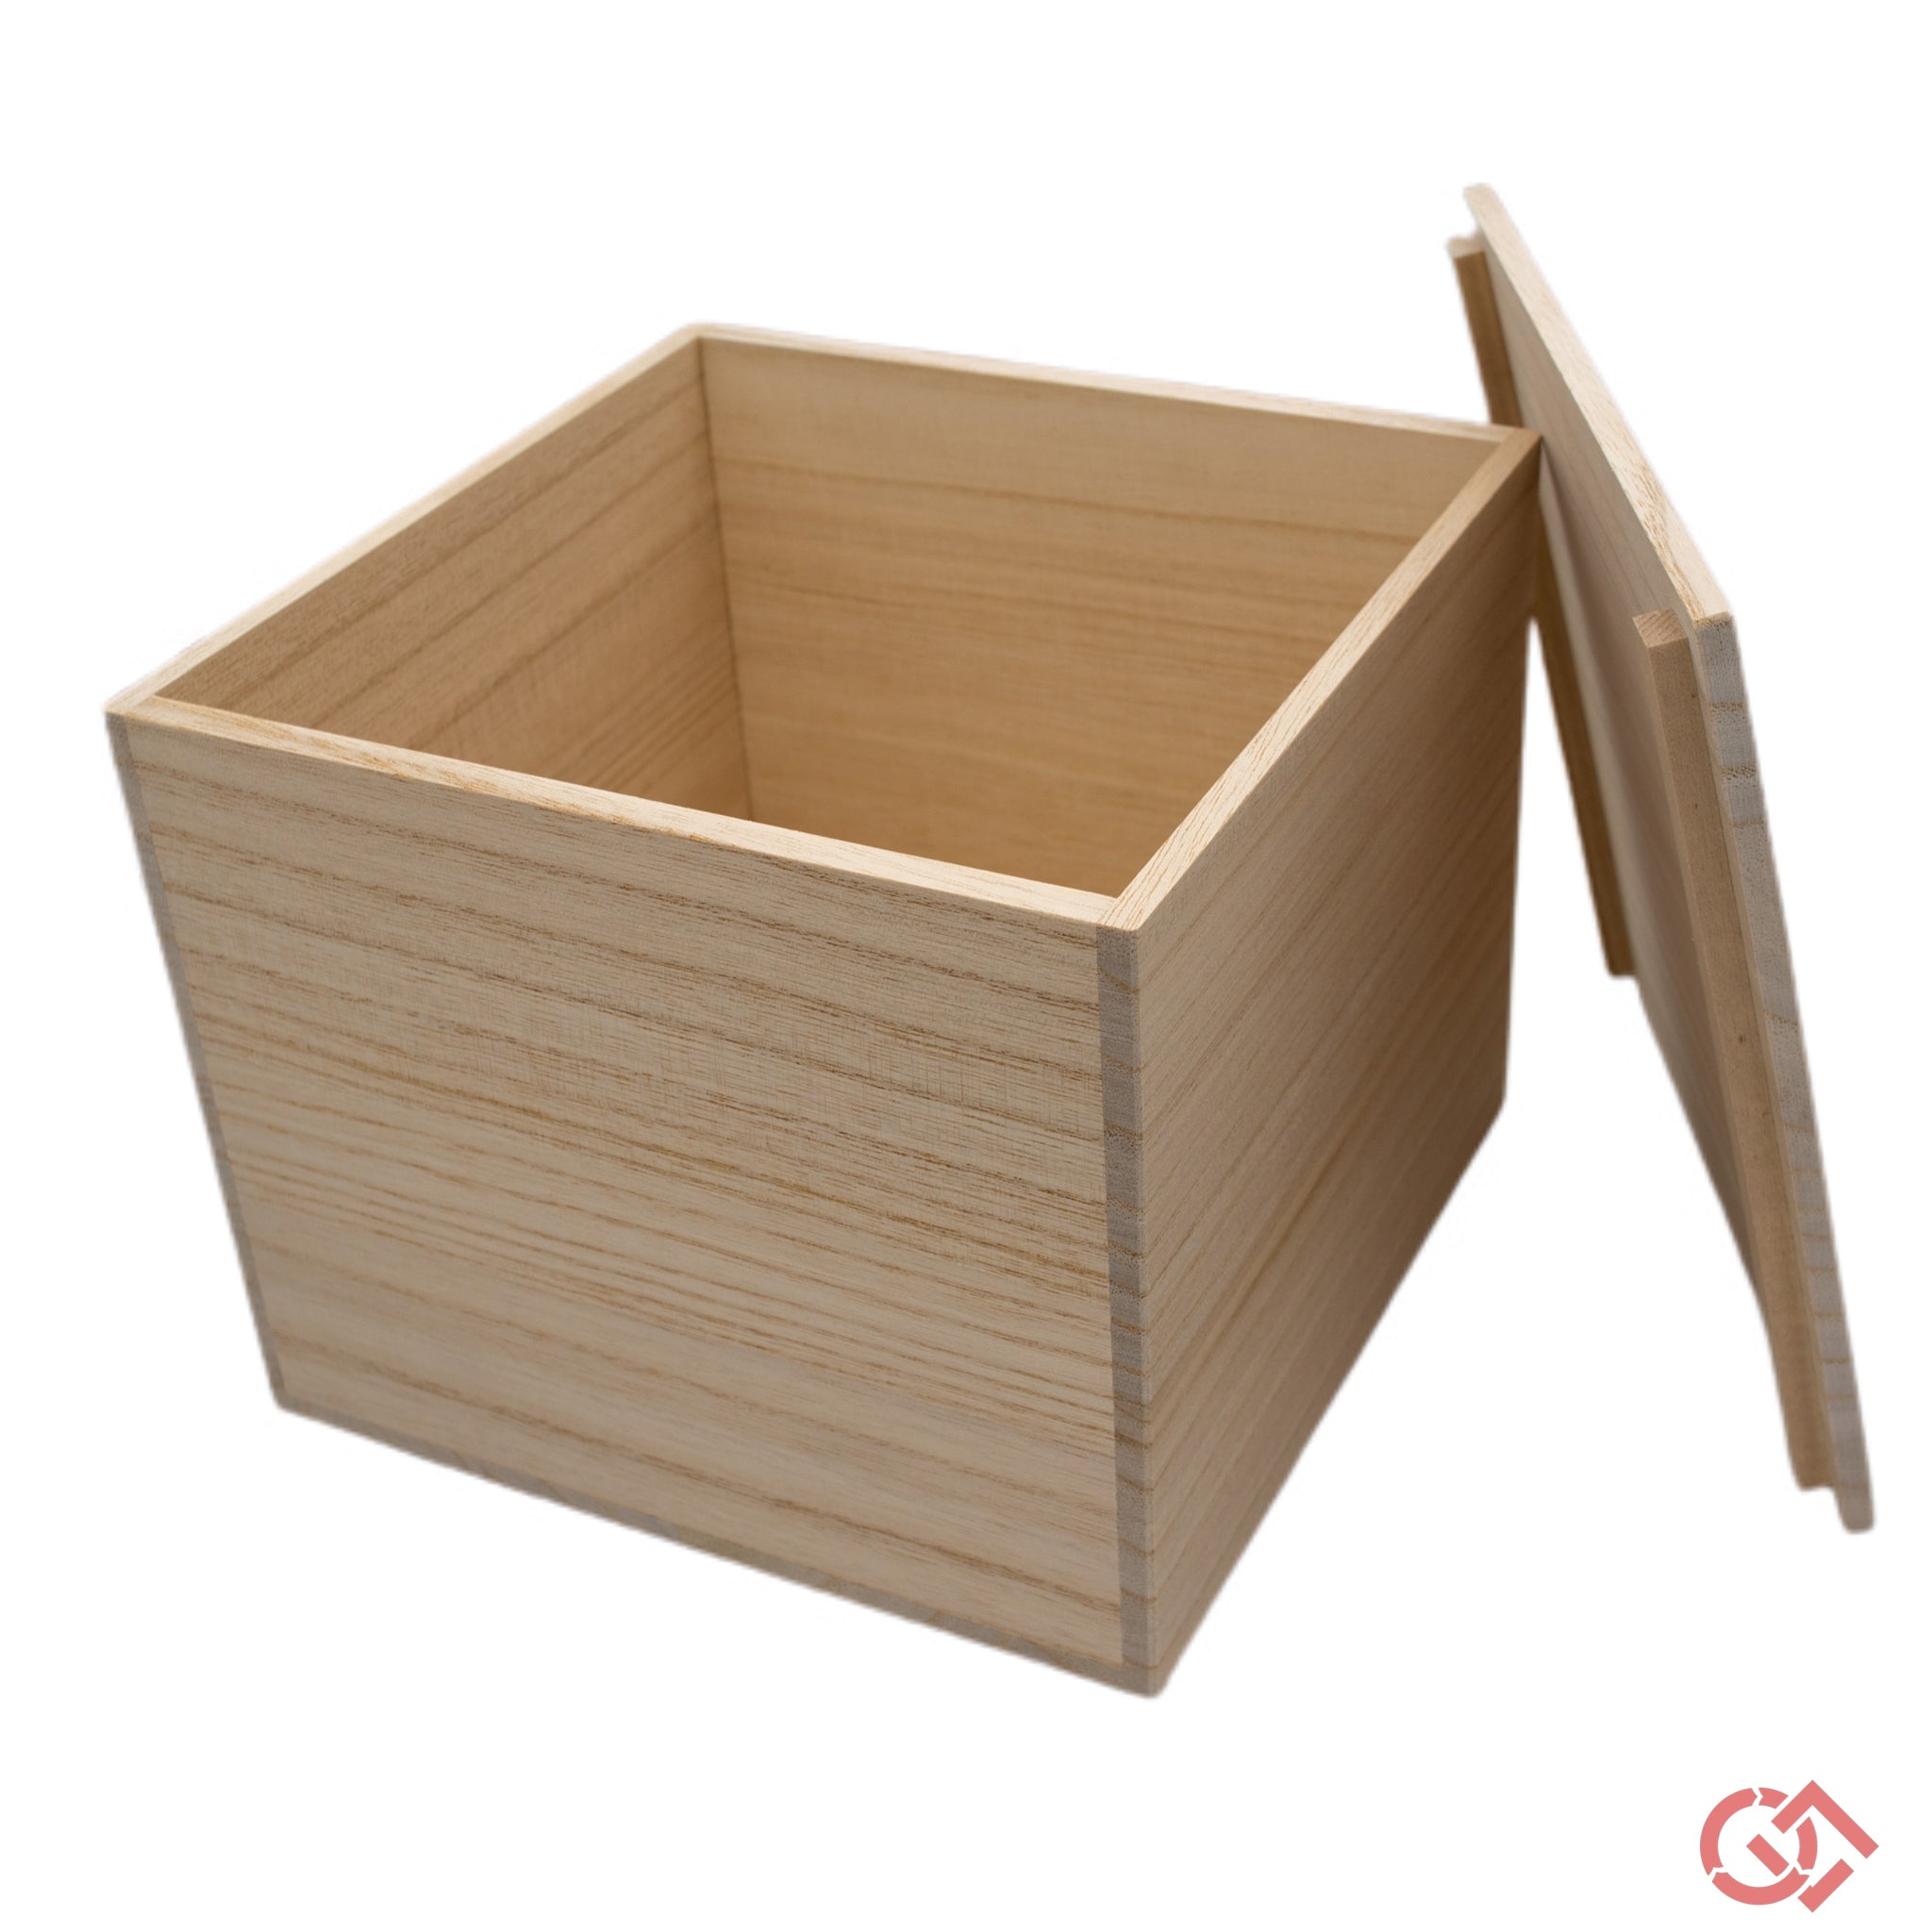 Paulownia wood box for Kintsugi pottery